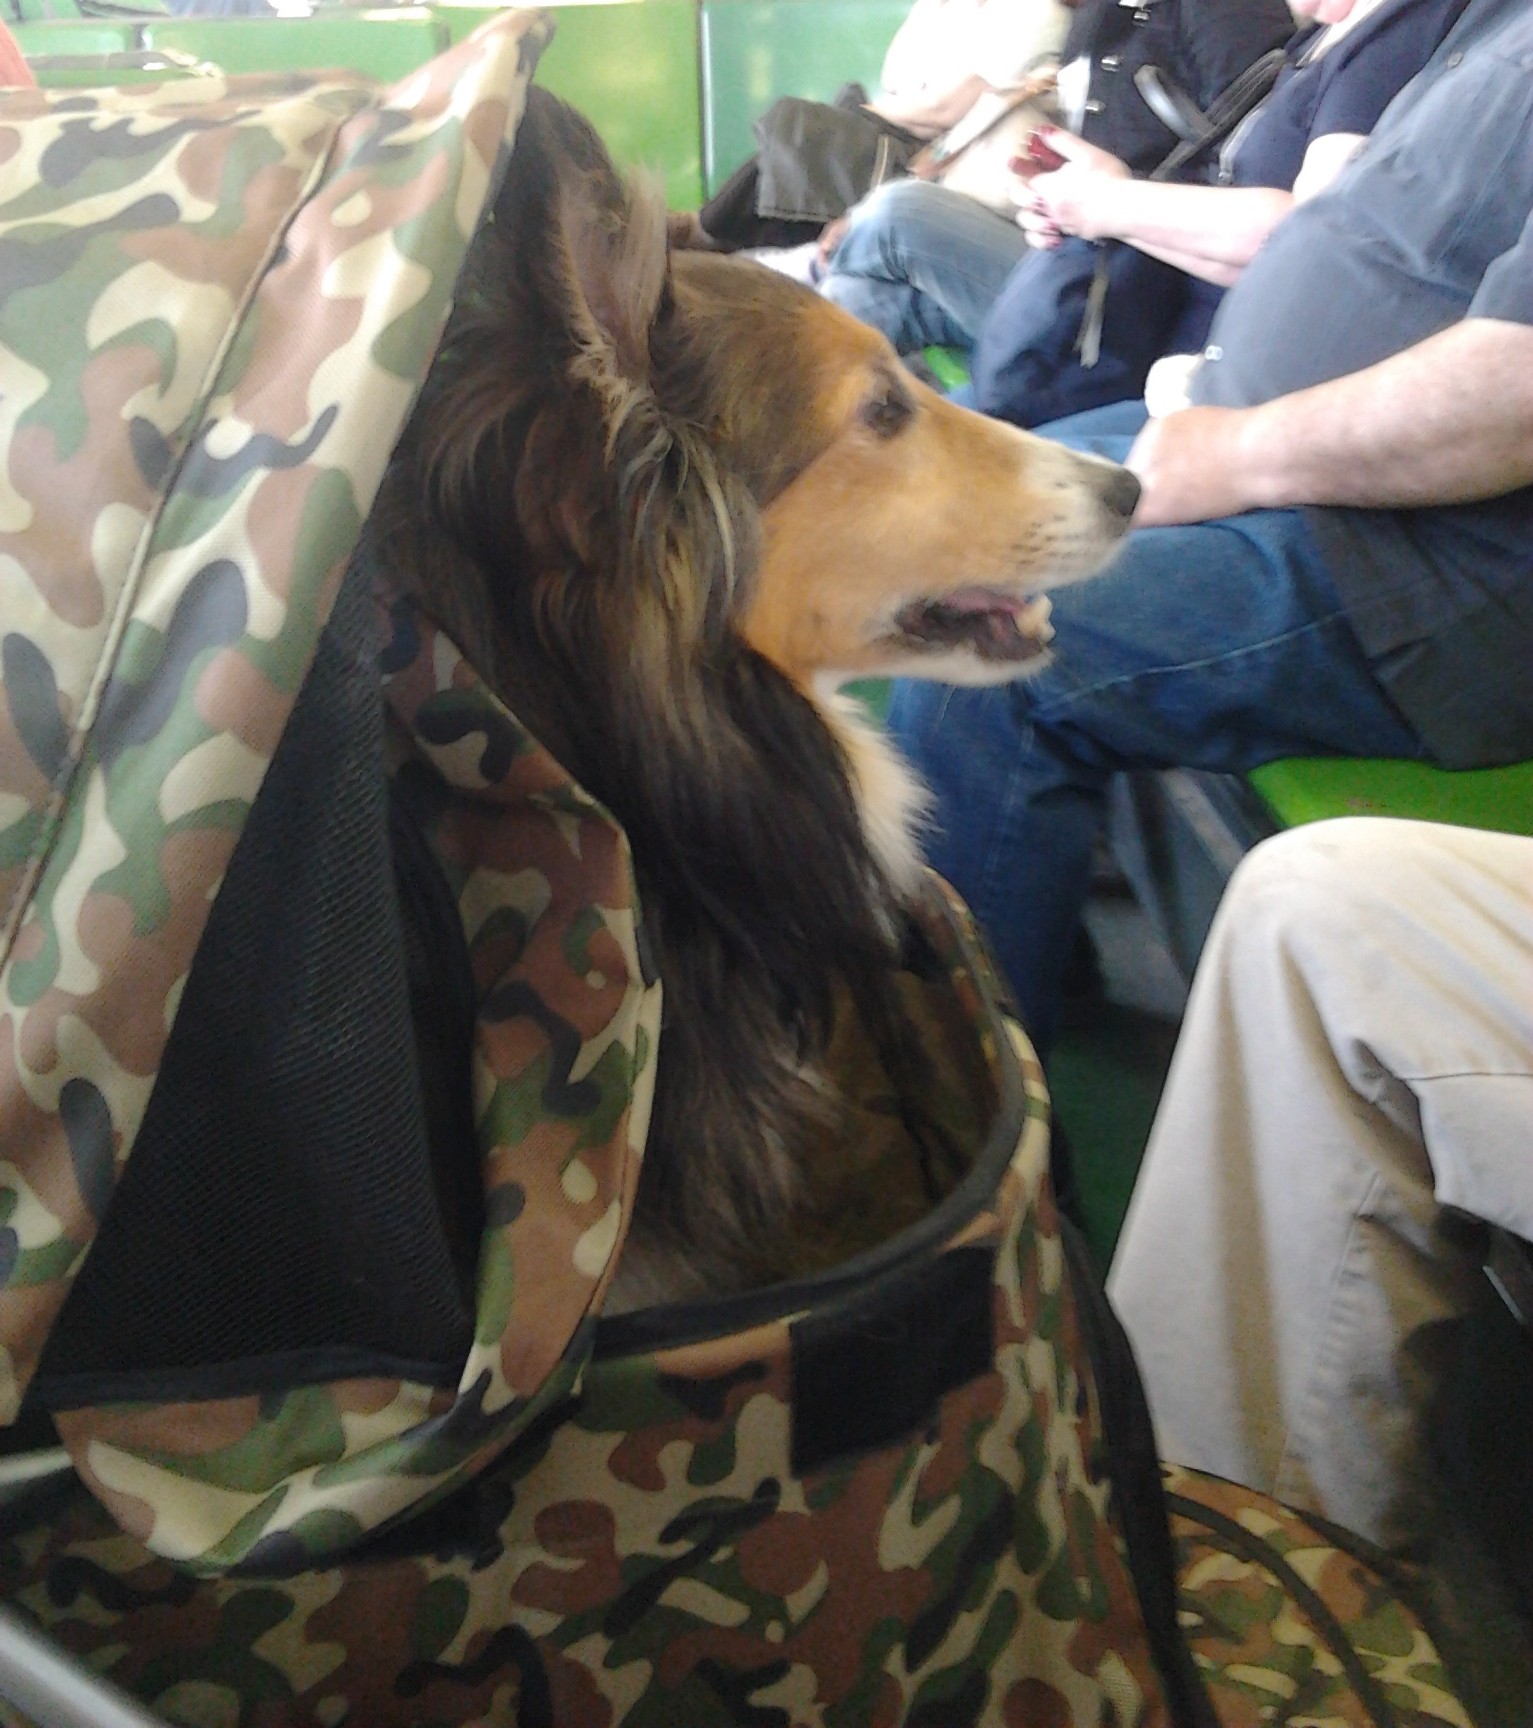 camouflage dog stroller